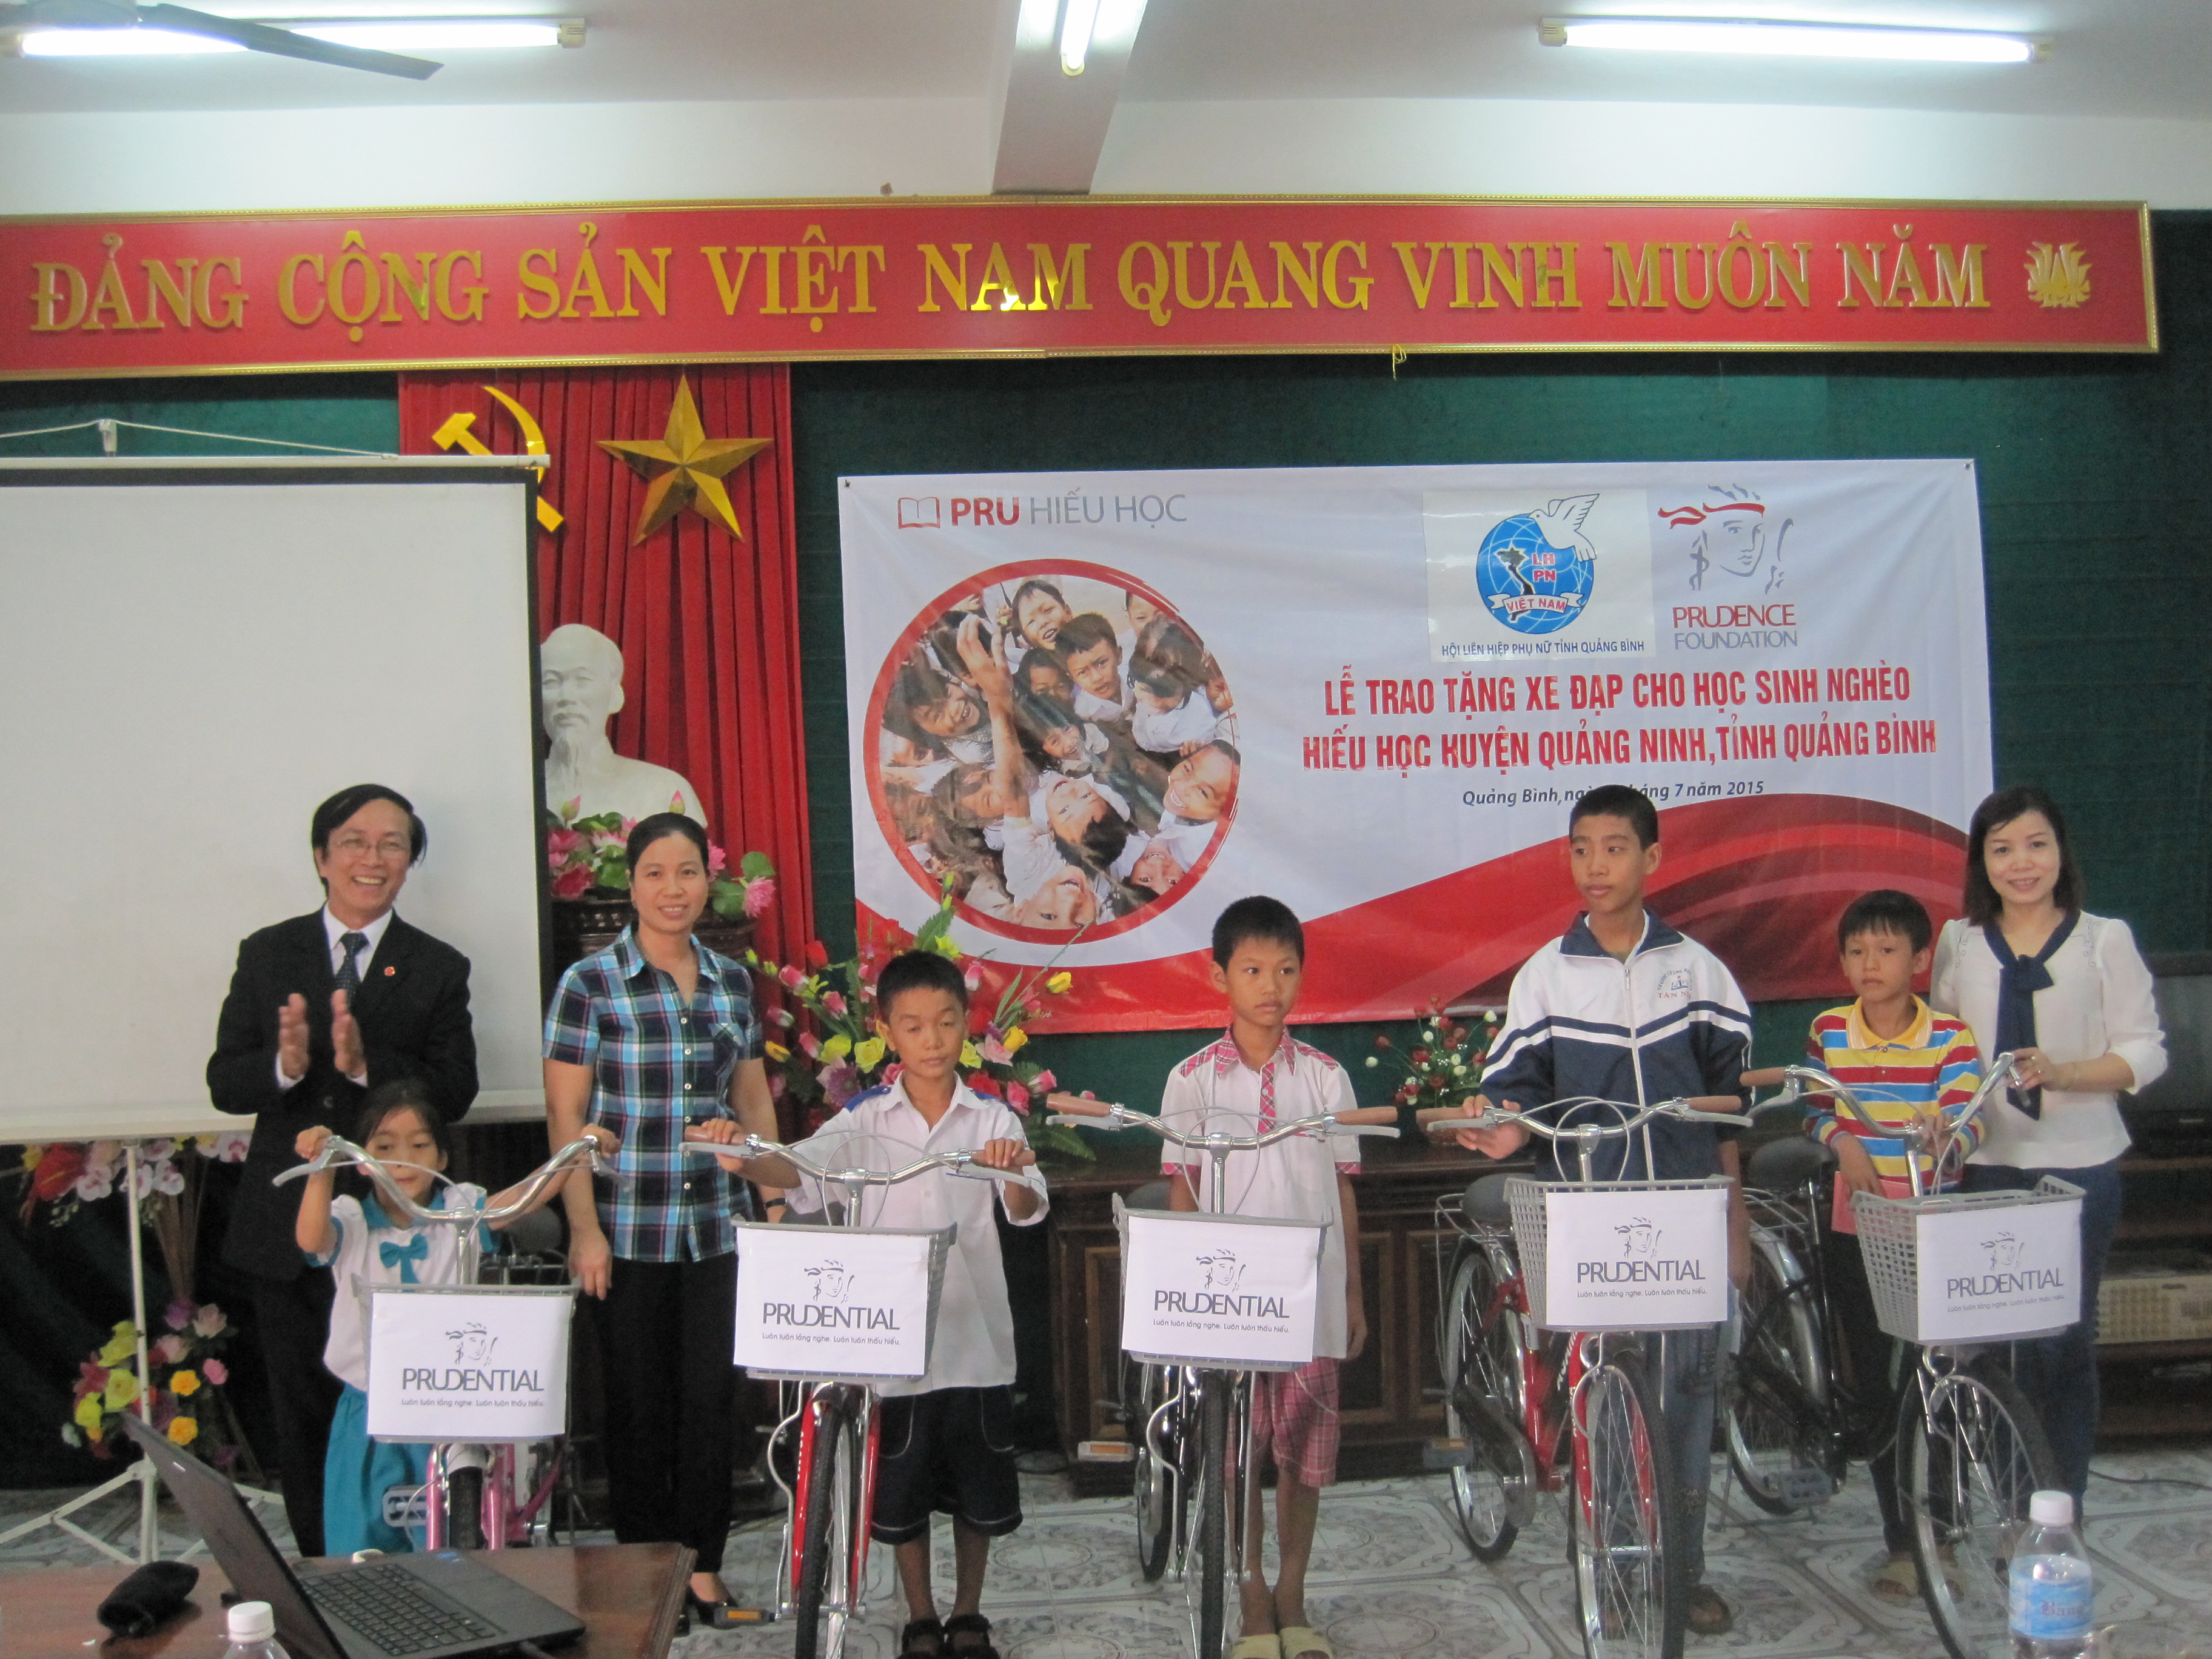  Đại diện lãnh đạo Công ty BHNT Prudential và Hội LHPN huyện Quảng Ninh tặng xe đạp cho các em học sinh